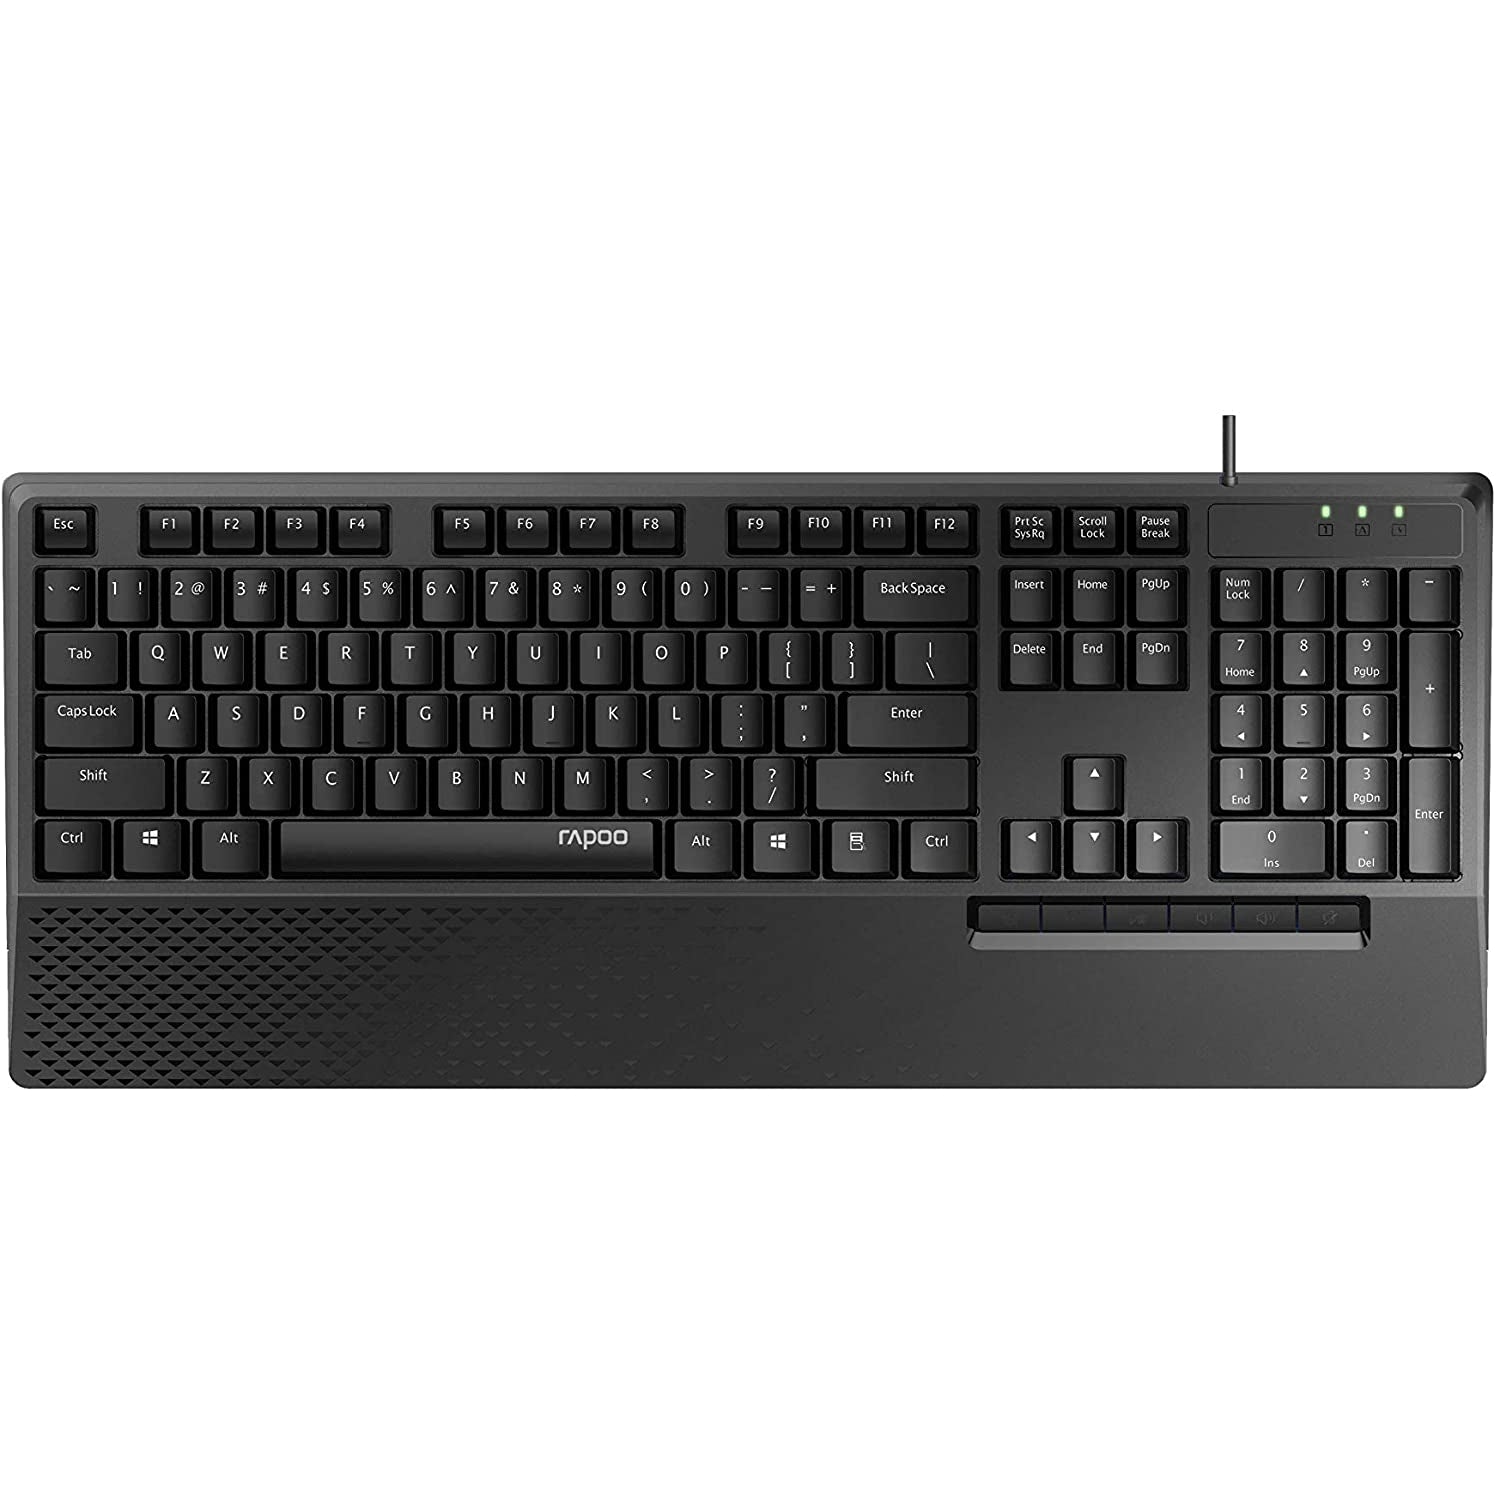 Rapoo NX2000 Wired Keyboard Mouse Desktop Combo Set, Black - Refurbished Excellent